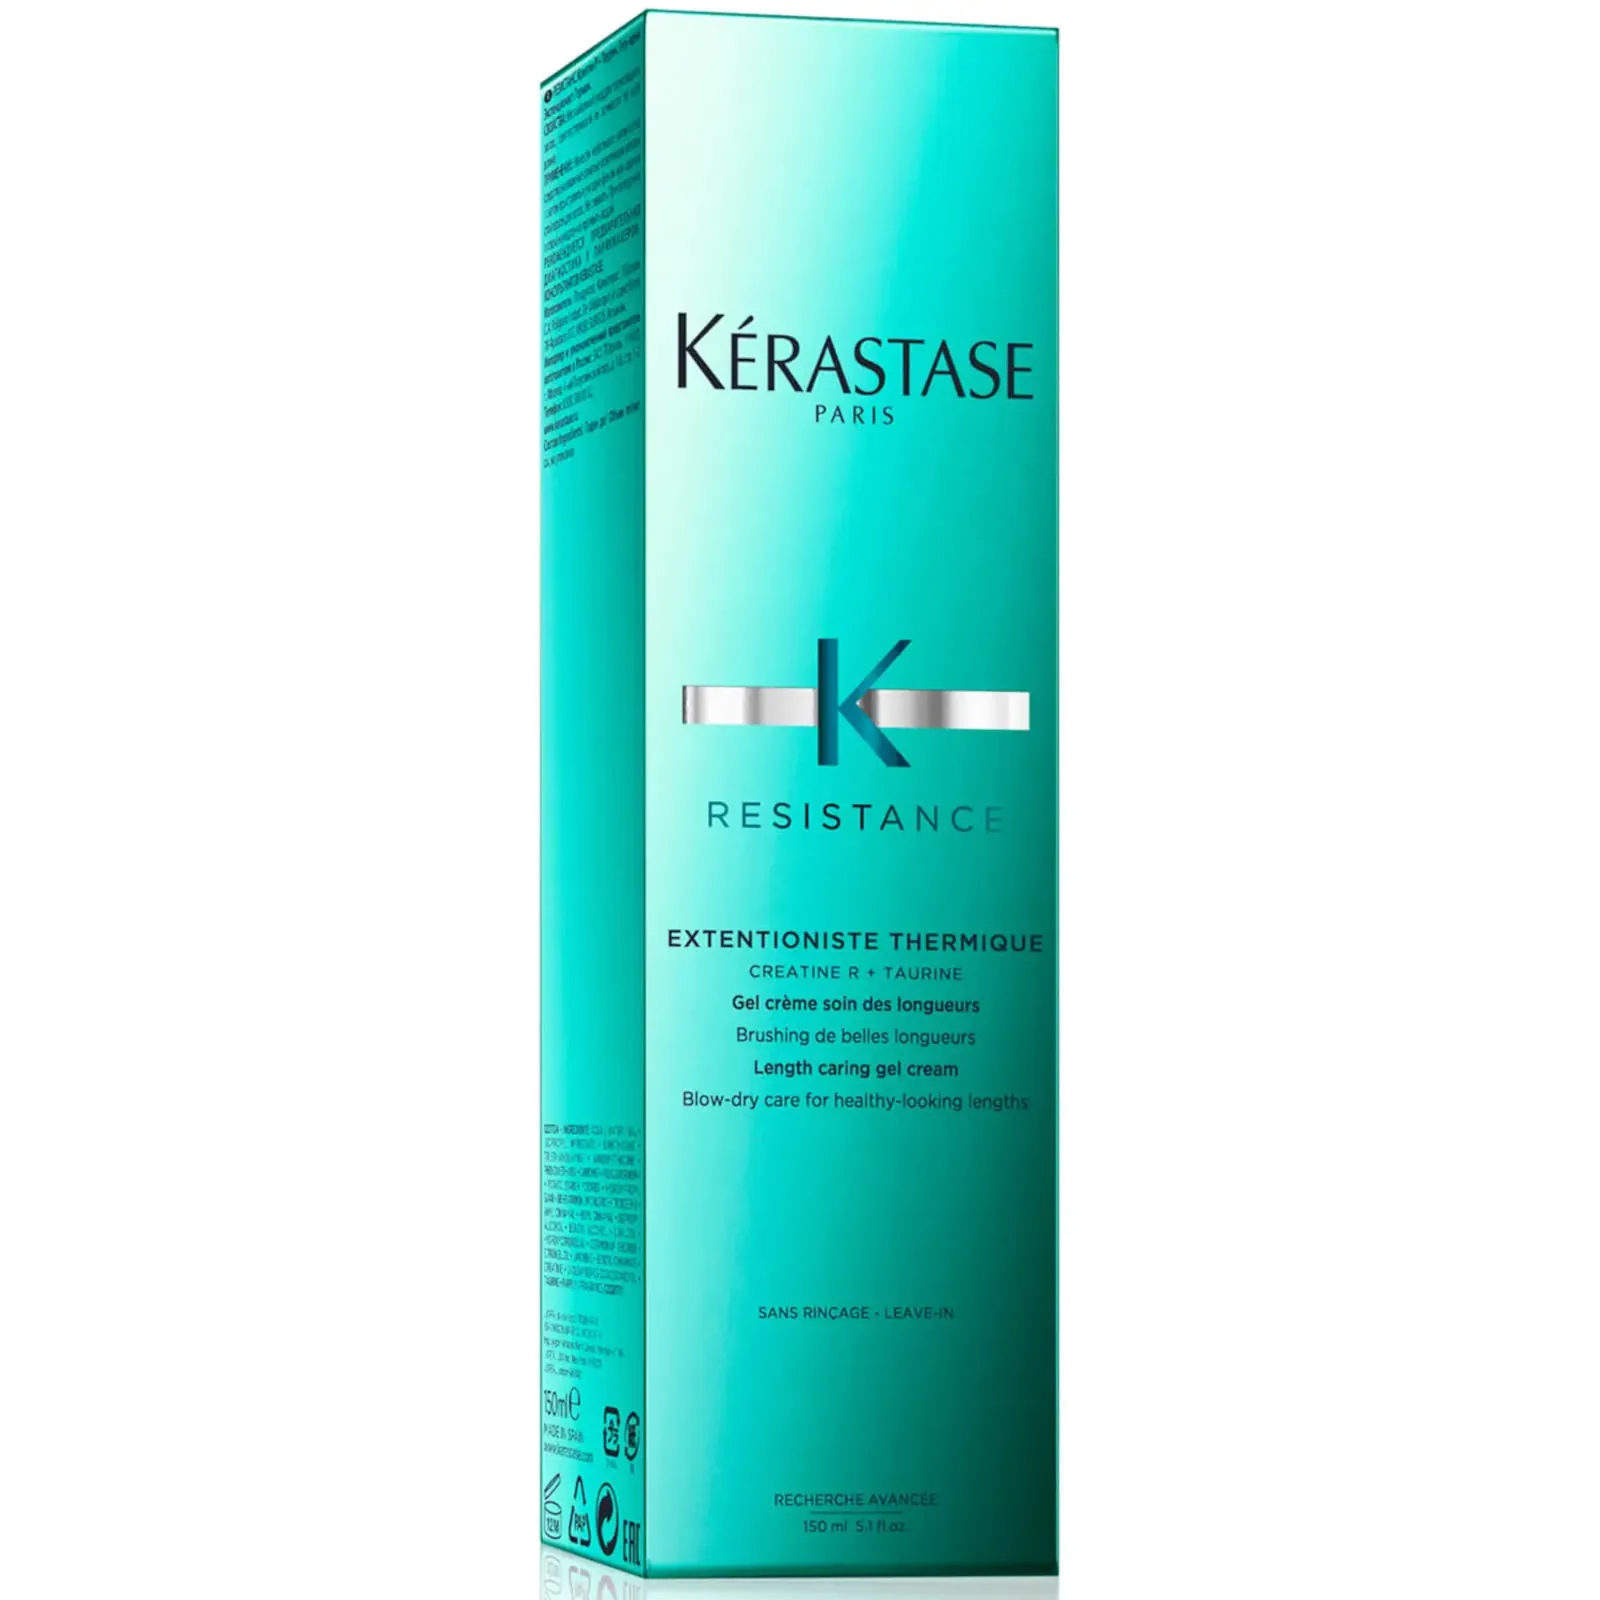 min Fritagelse mønt Kérastase resistance extentioniste thermique gel cream 150ml 5.1 fl.oz -  Lyskin